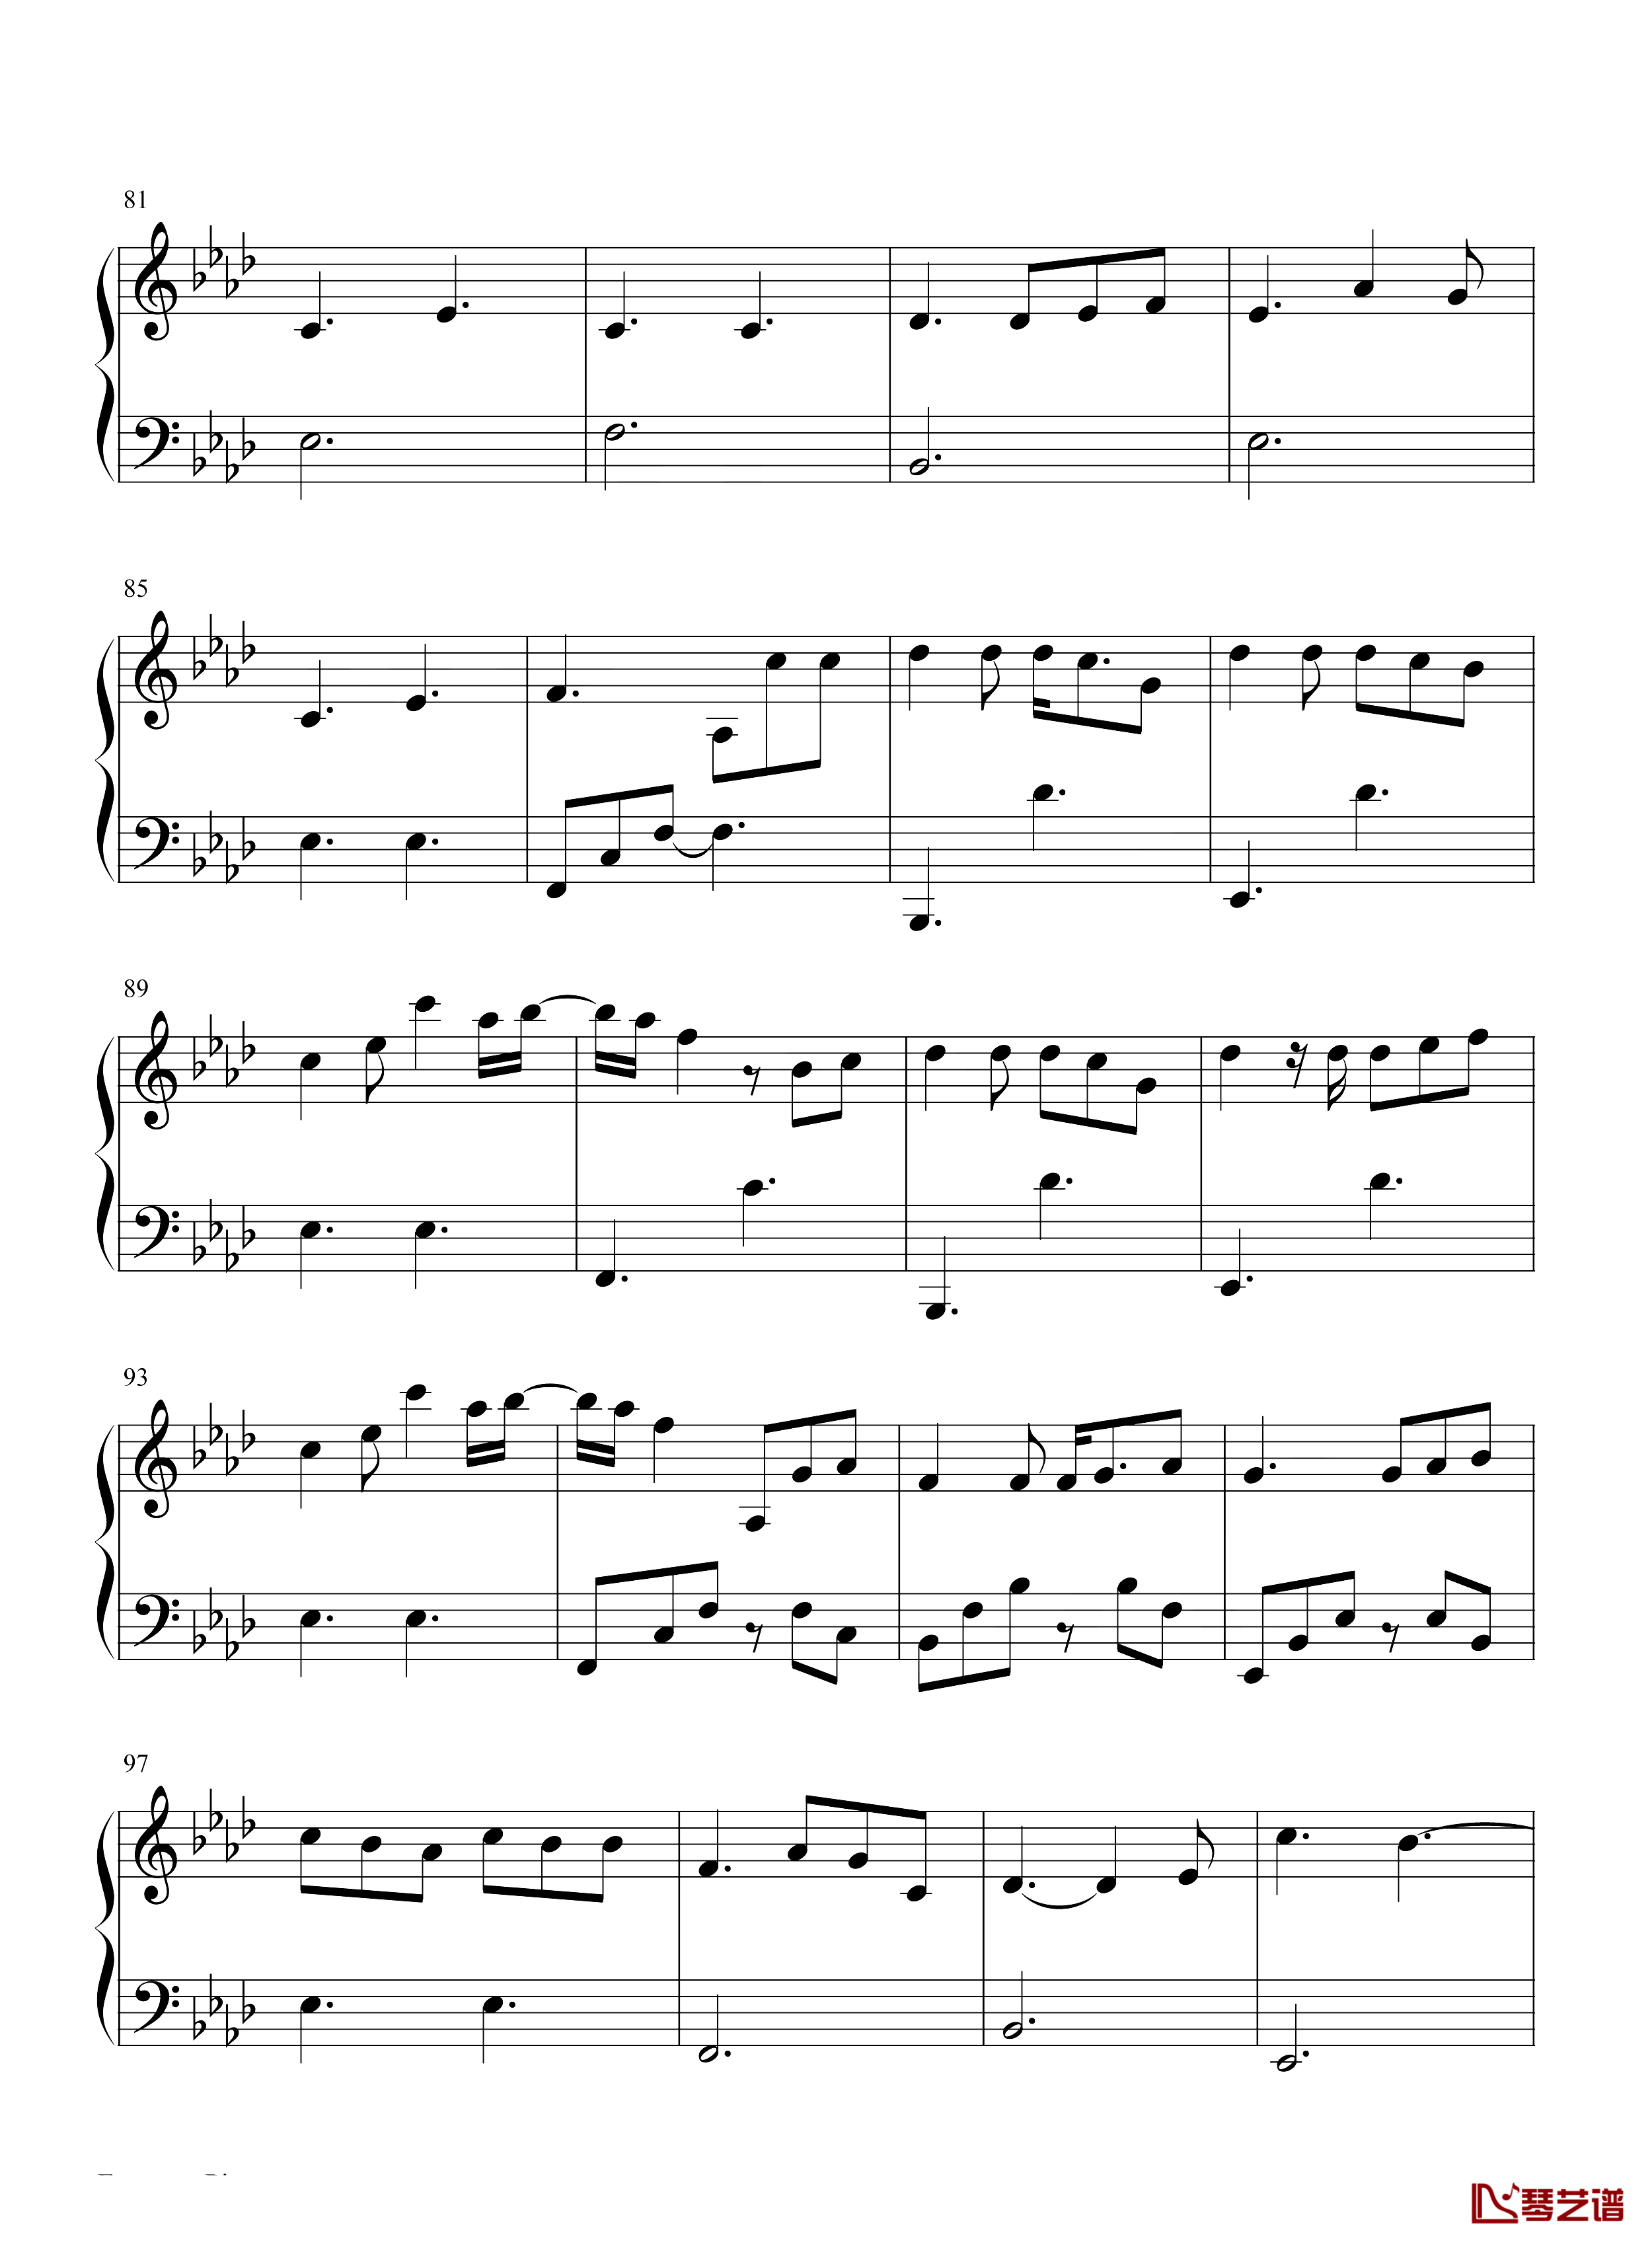 Glimpse of Us钢琴谱-Joji-数字时代最迷人艺术家之一5